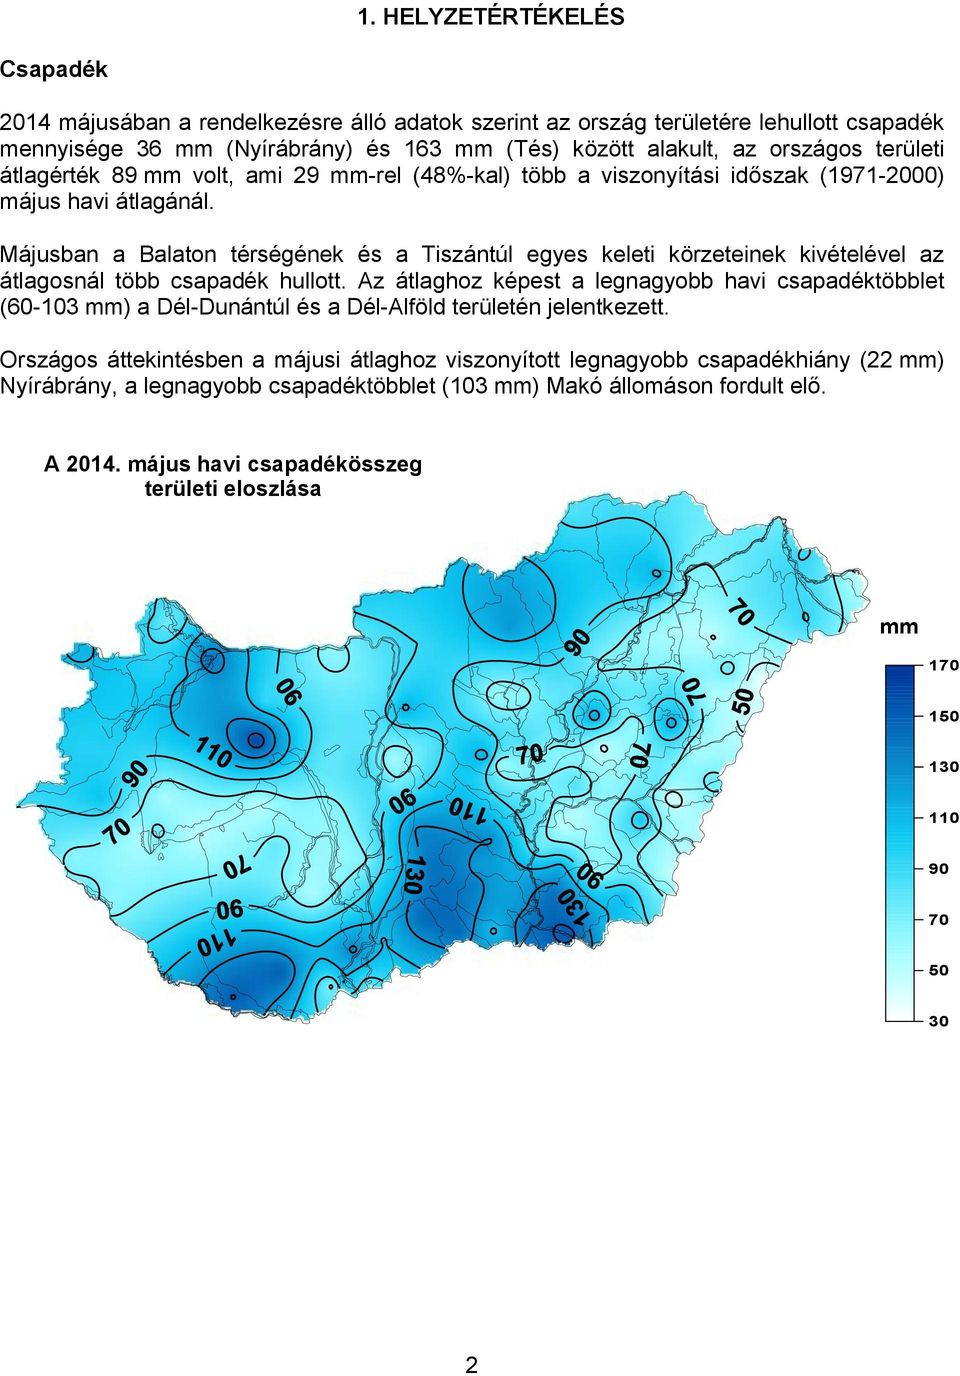 Májusban a Balaton térségének és a Tiszántúl egyes keleti körzeteinek kivételével az átlagosnál több csapadék hullott.